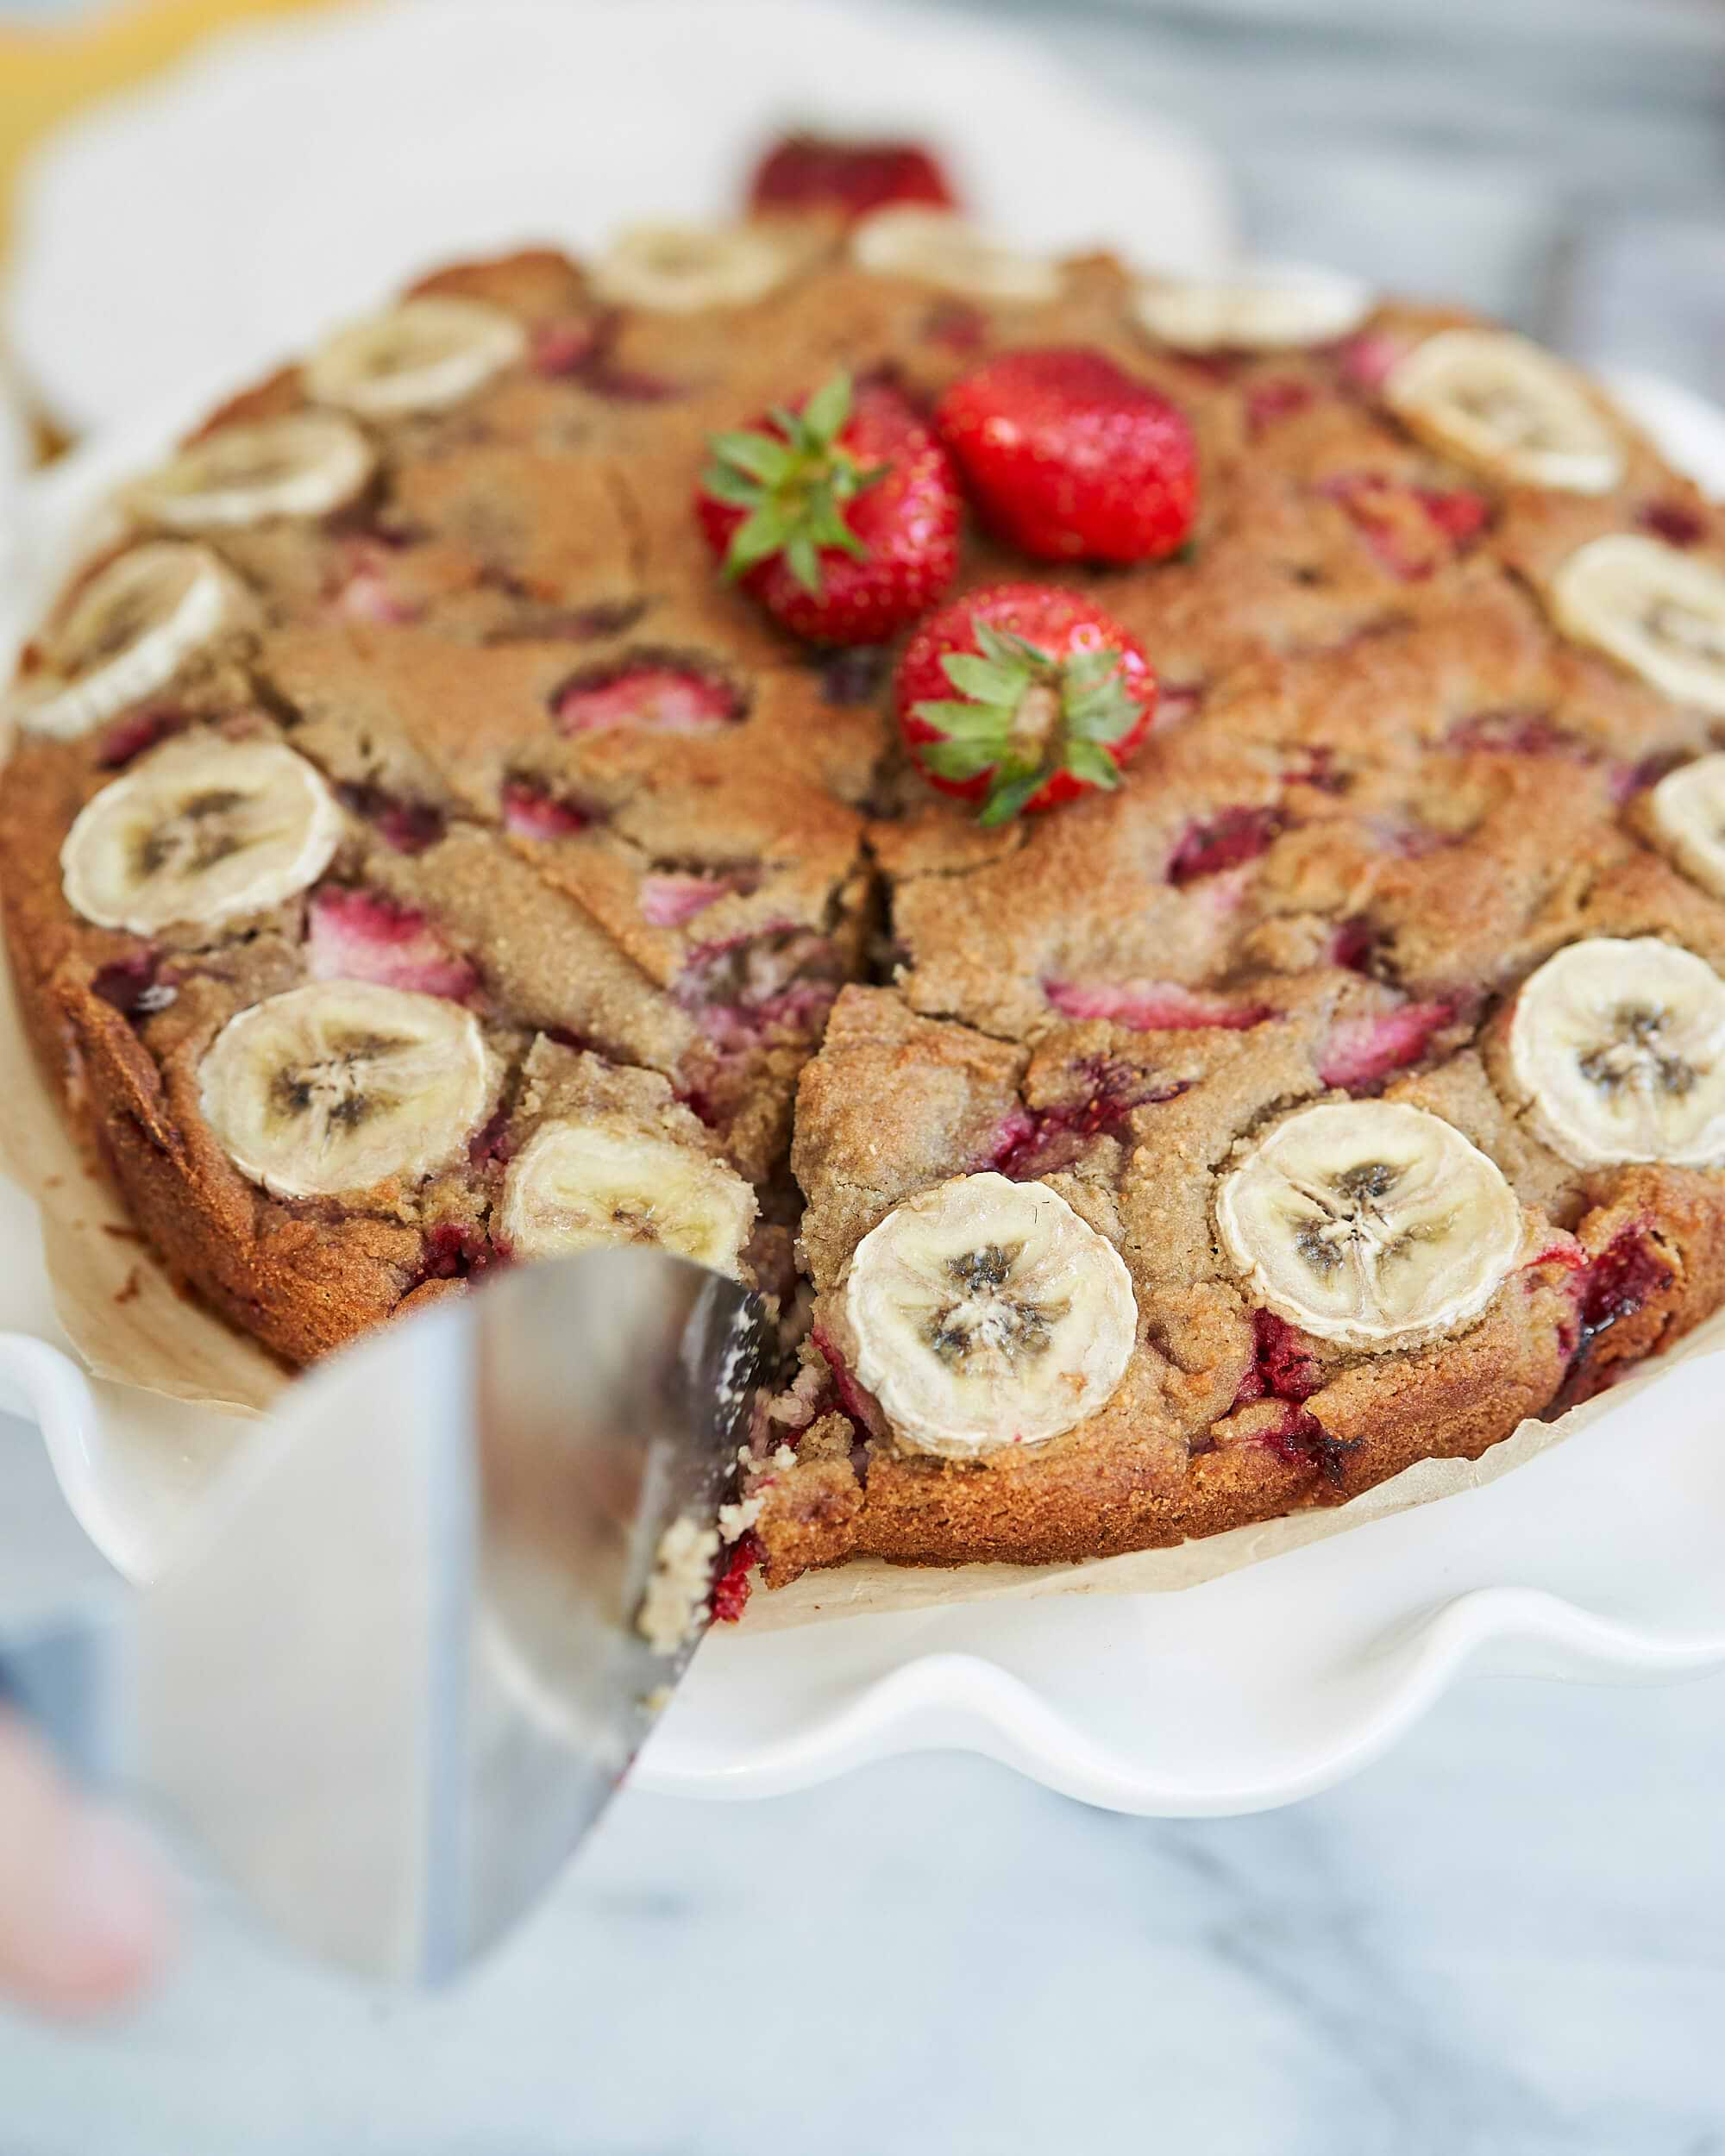 Gluten-free Strawberry Banana Cake